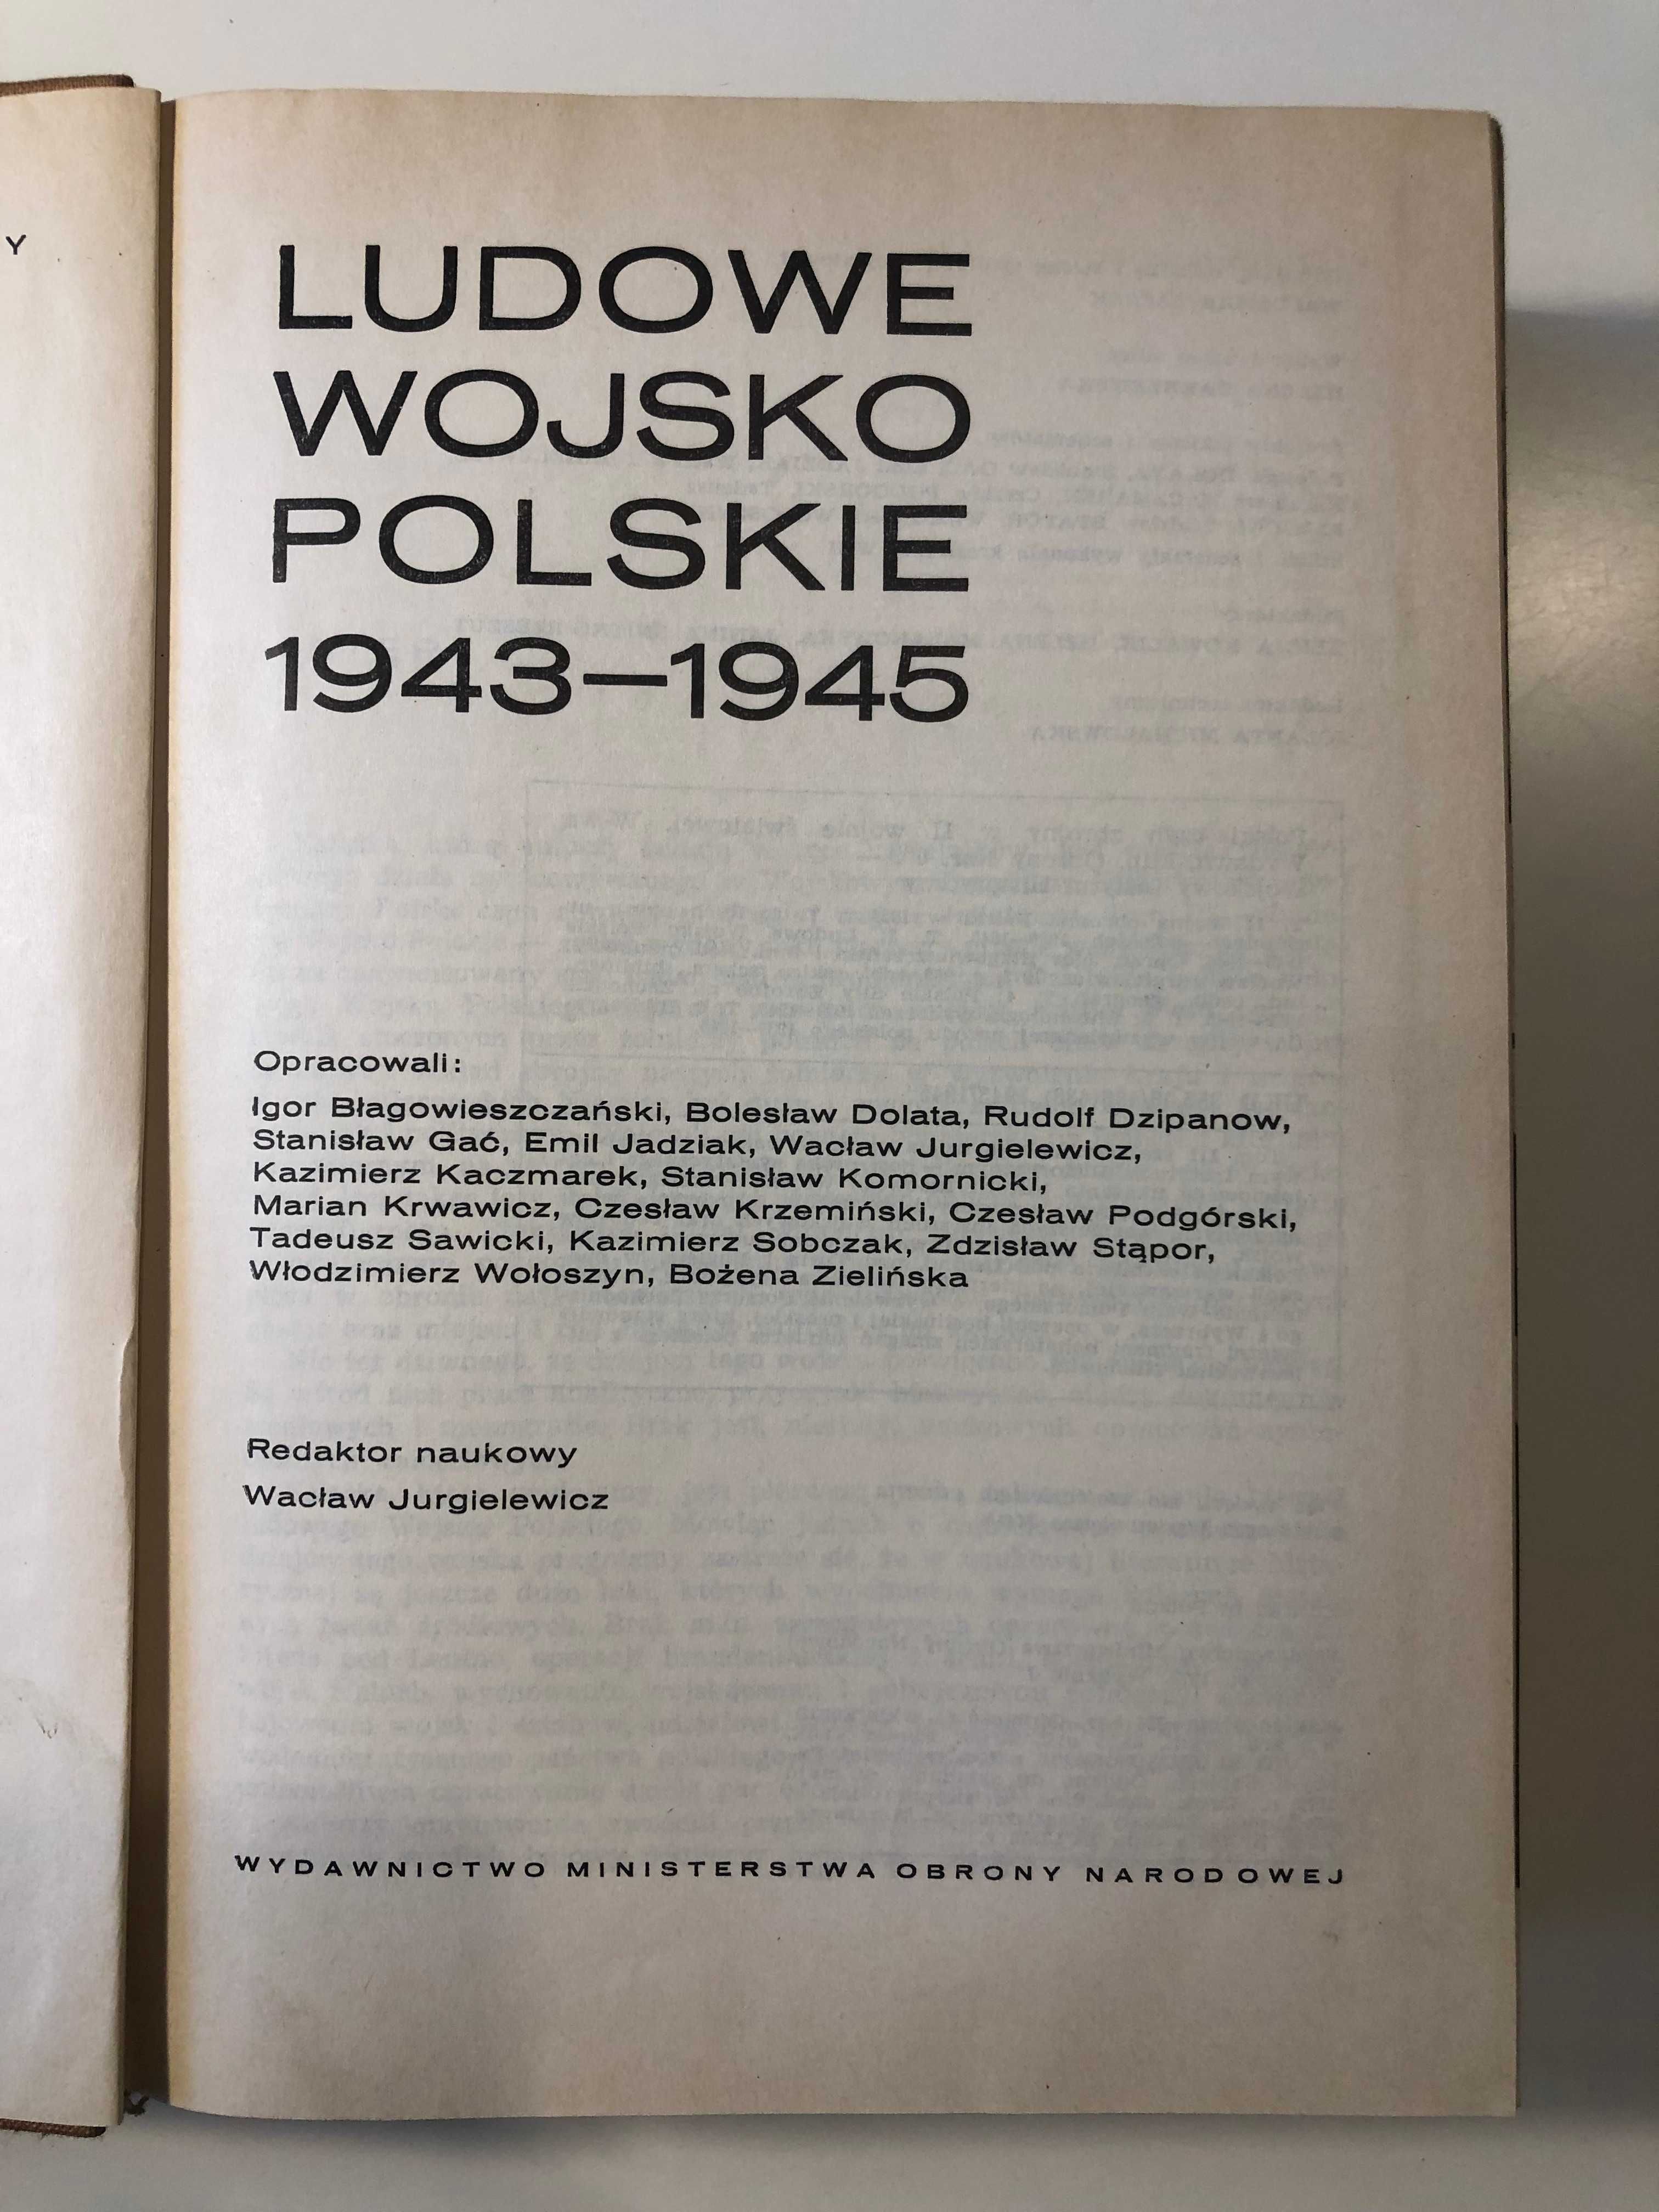 Ludowe Wojsko Polskie 1943 - 1945: Polski czyn zbrojny w II wojnie